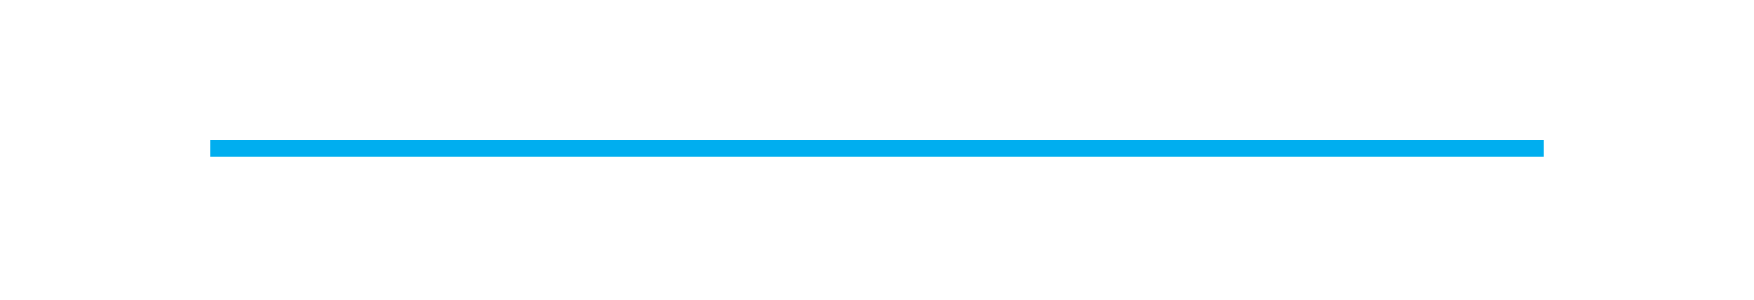 Прямой линии просто. Прямые линии. Синие линии на прозрачном фоне. Тонкие линии. Синяя полоса.